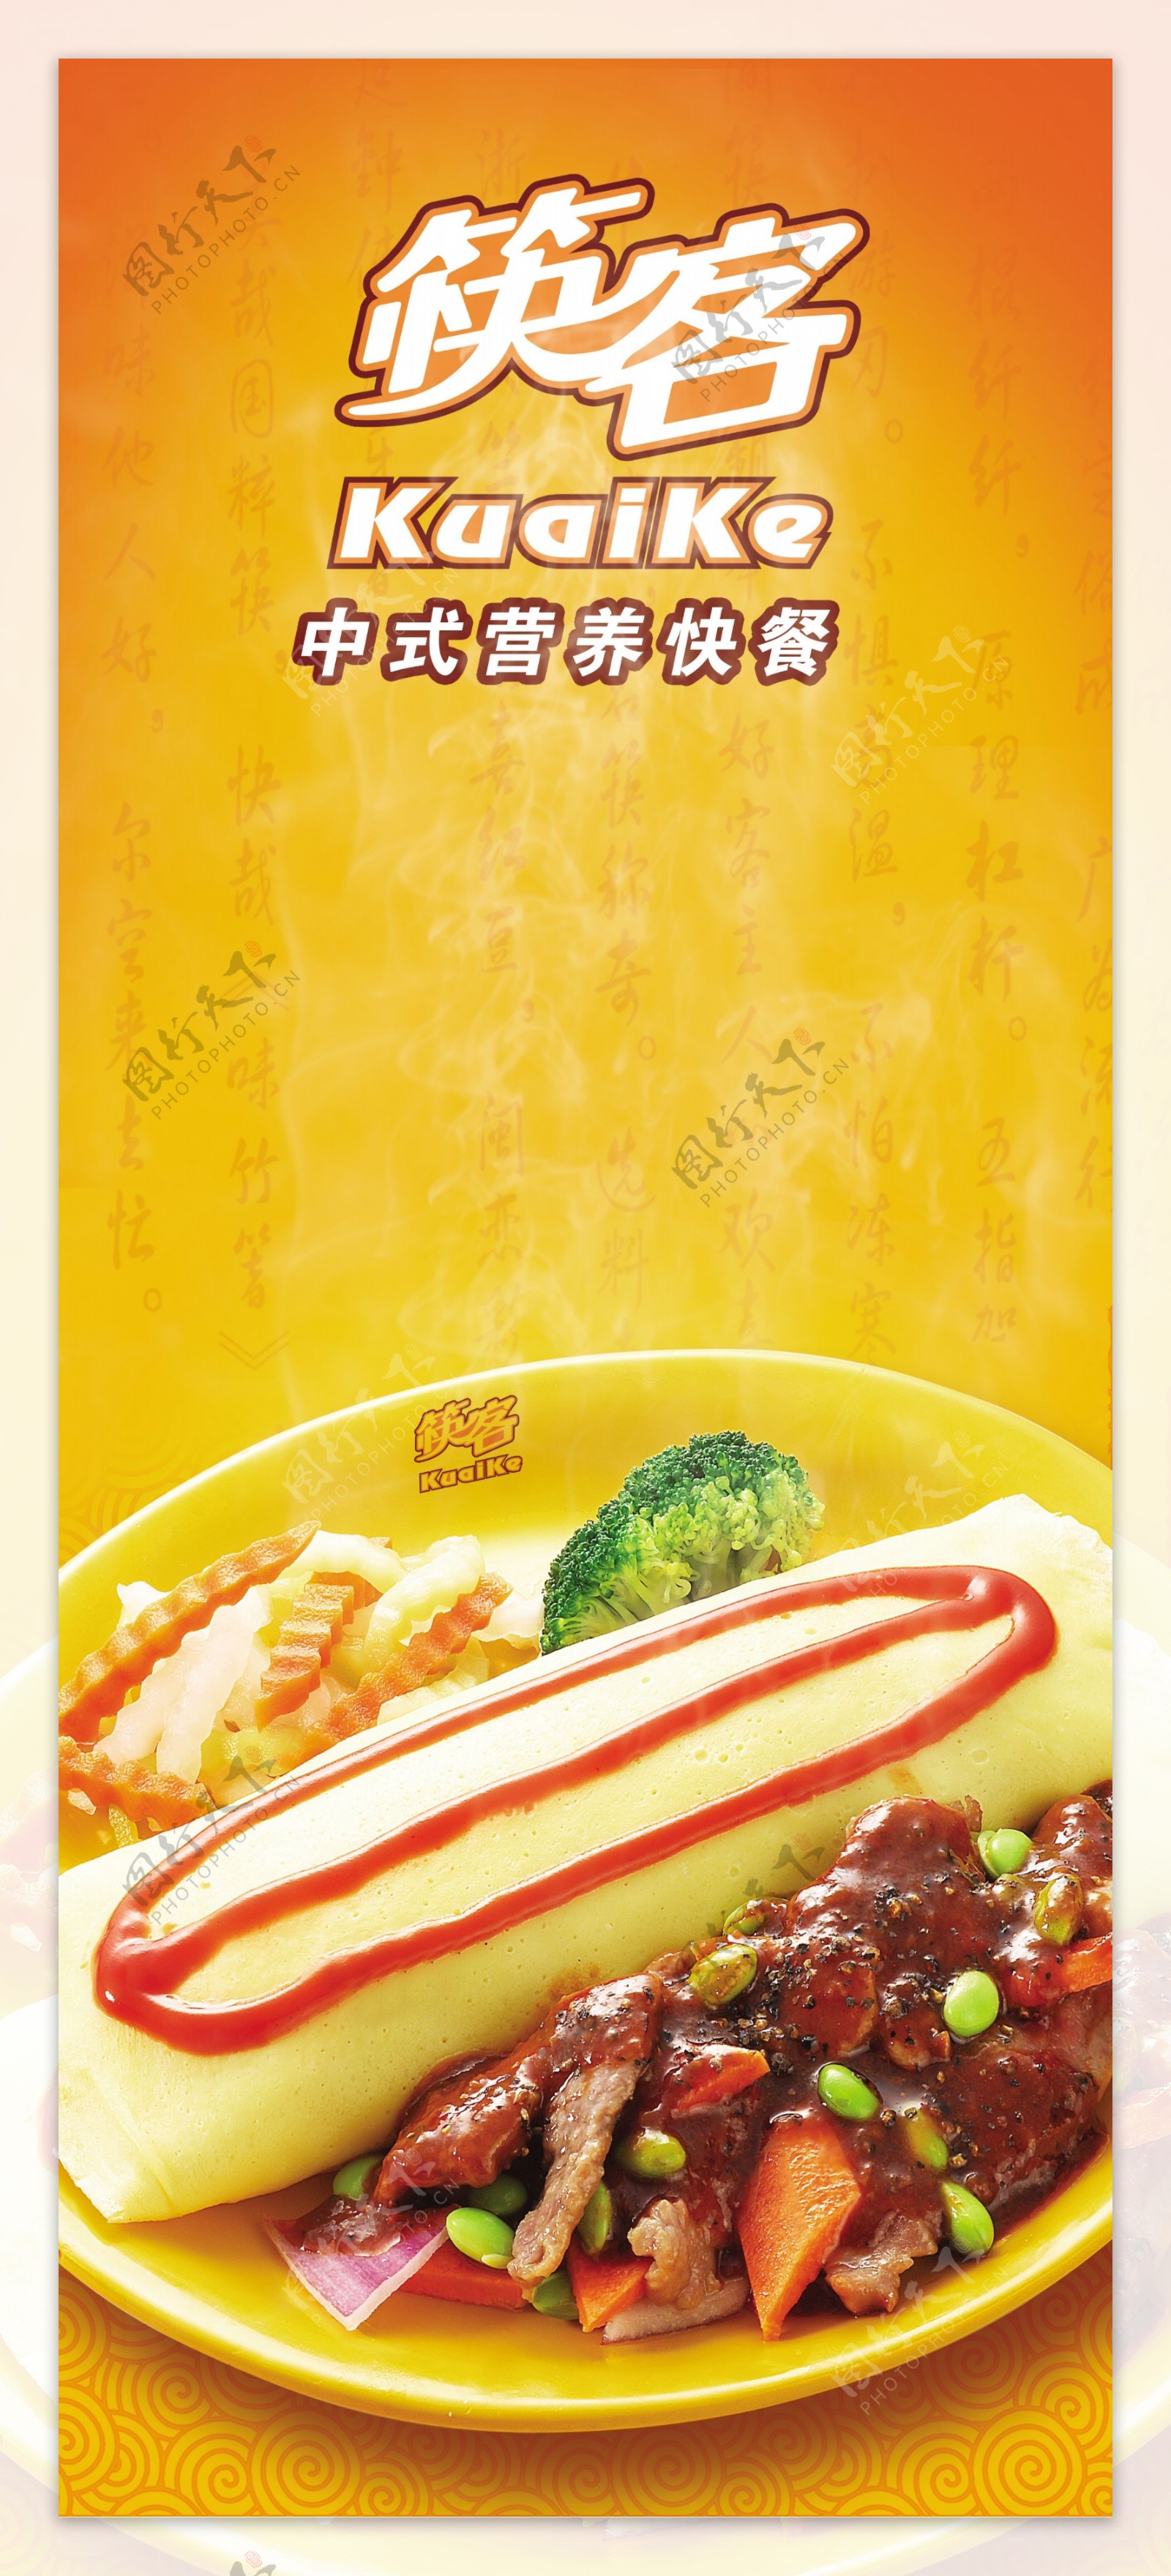 中式营养快餐广告设计合层图片